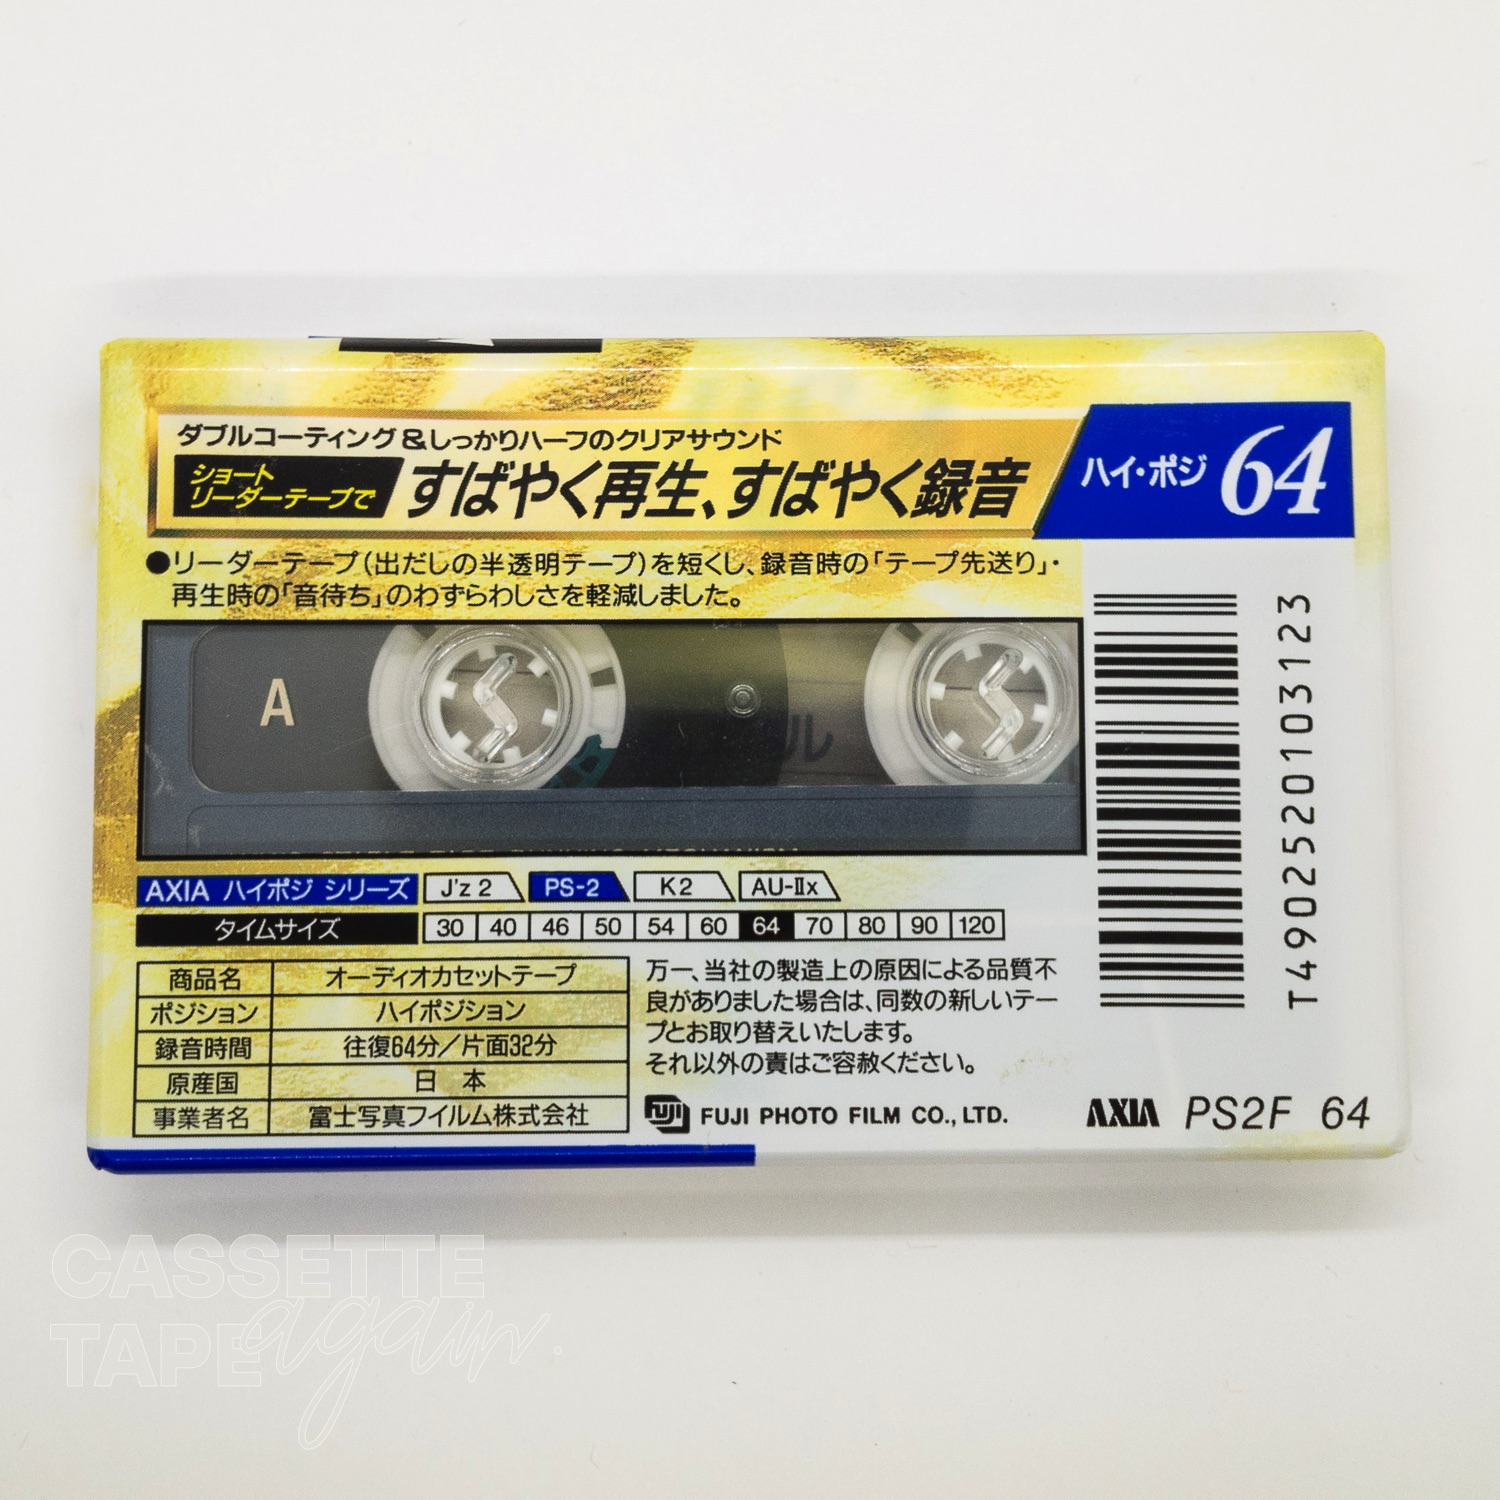 耐熱 二層 足あとぐらす (M) AXIA ハイポジションカセットテープ Z 2